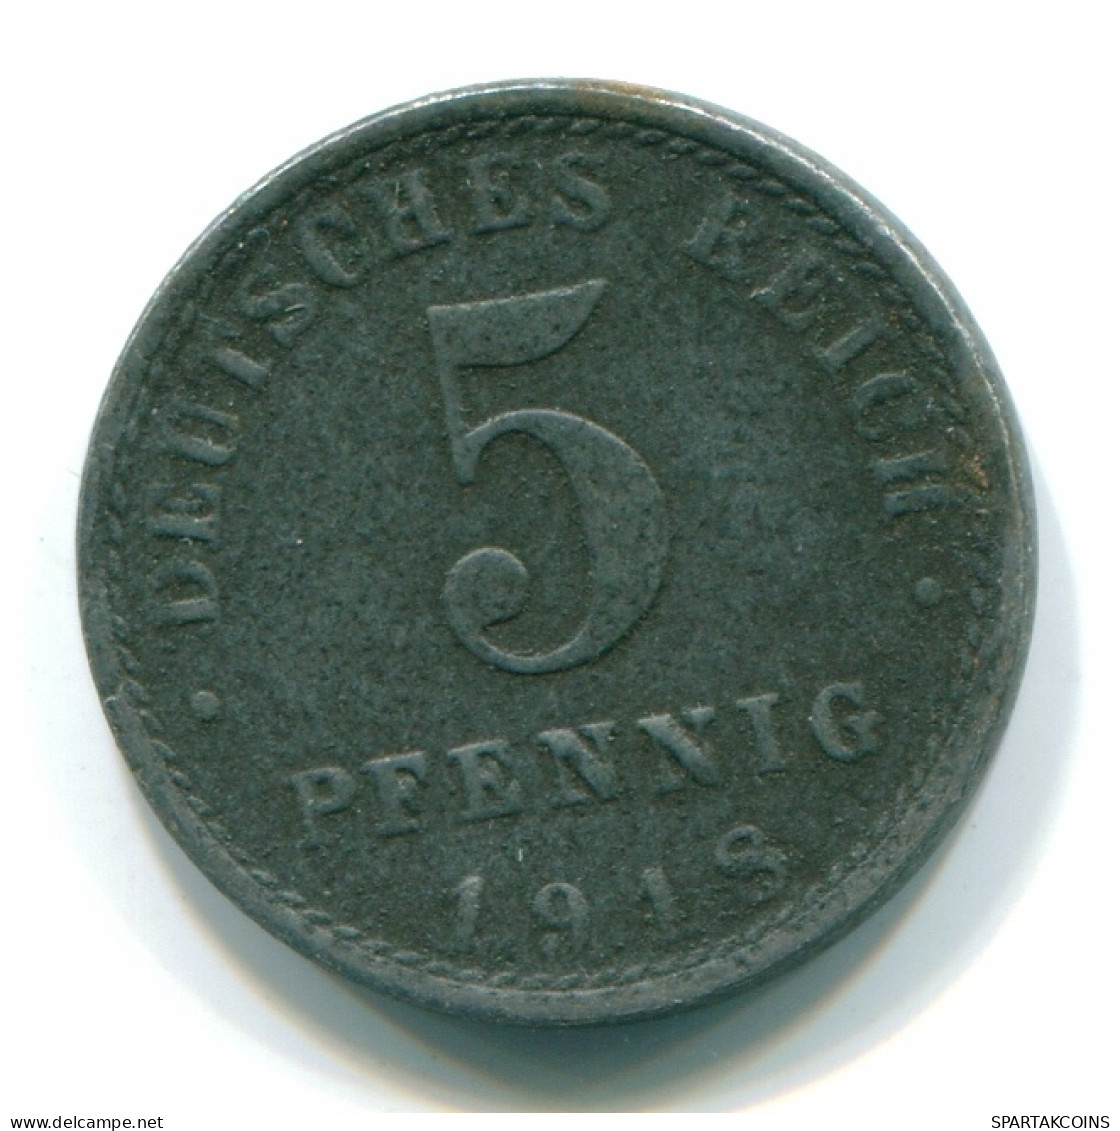 5 PFENNIG 1918 NOTGELD ALEMANIA Moneda GERMANY #DE10105.3.E - 5 Rentenpfennig & 5 Reichspfennig